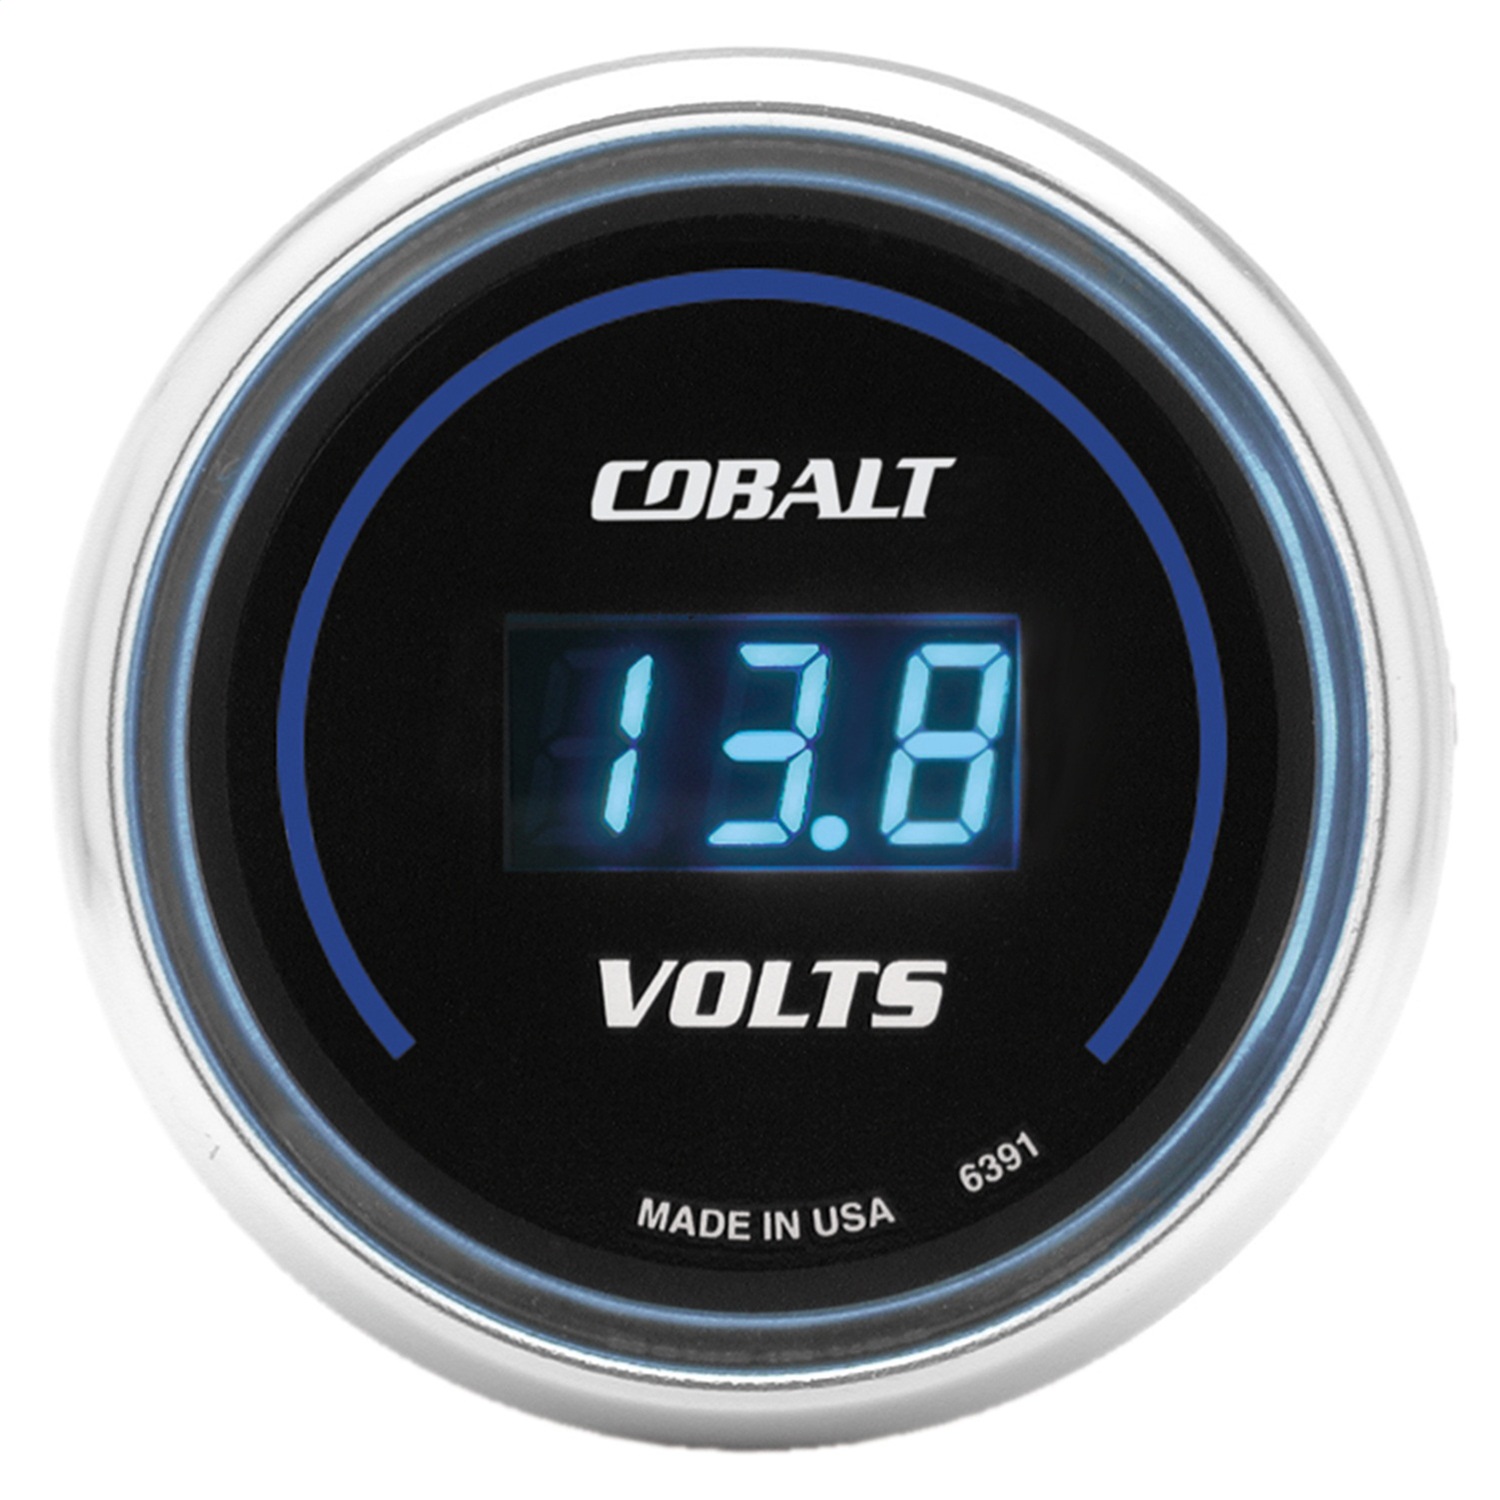 Auto Meter Auto Meter 6391 Cobalt; Digital Voltmeter Gauge